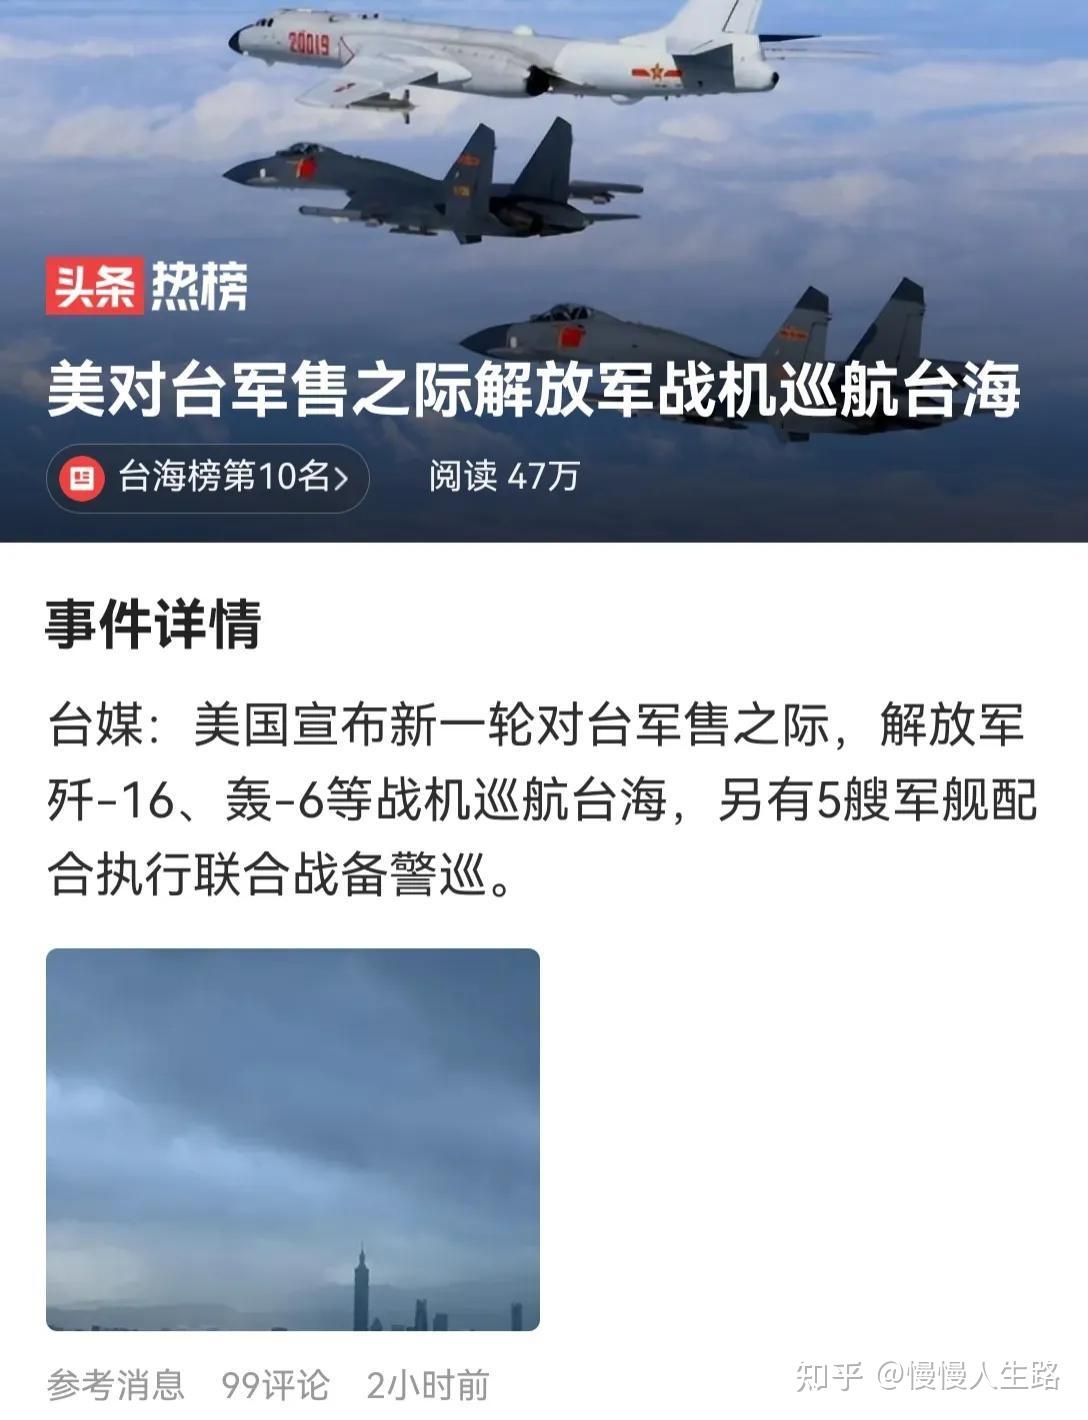 台湾花莲县海域发生4.4级地震 2021台湾地震最新消息今天_时政_中国小康网